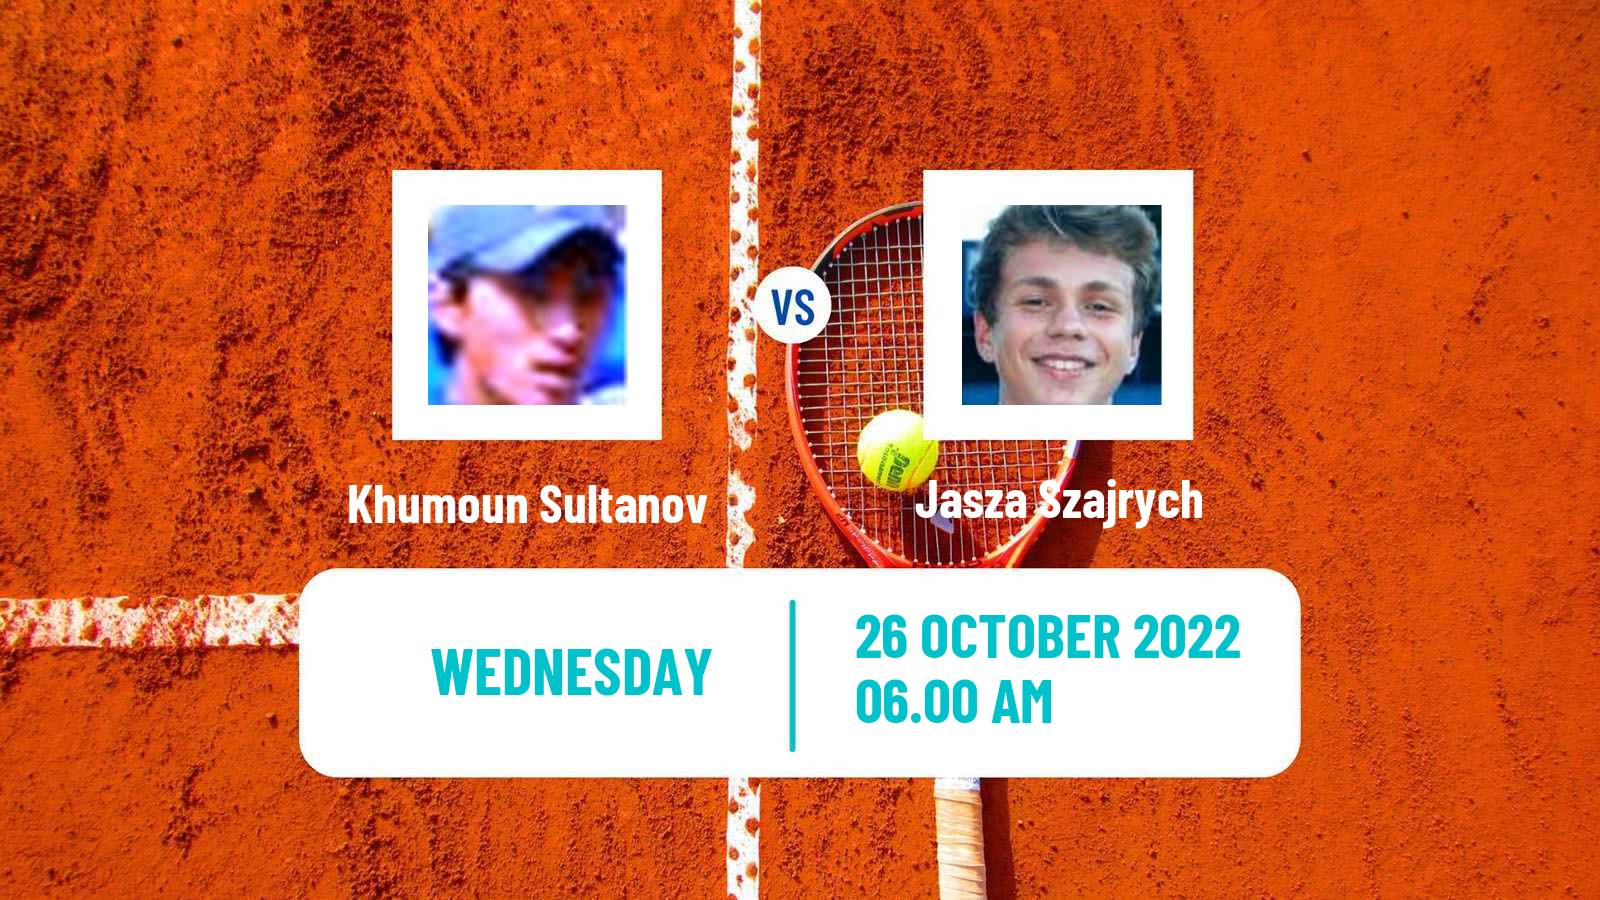 Tennis ITF Tournaments Khumoun Sultanov - Jasza Szajrych